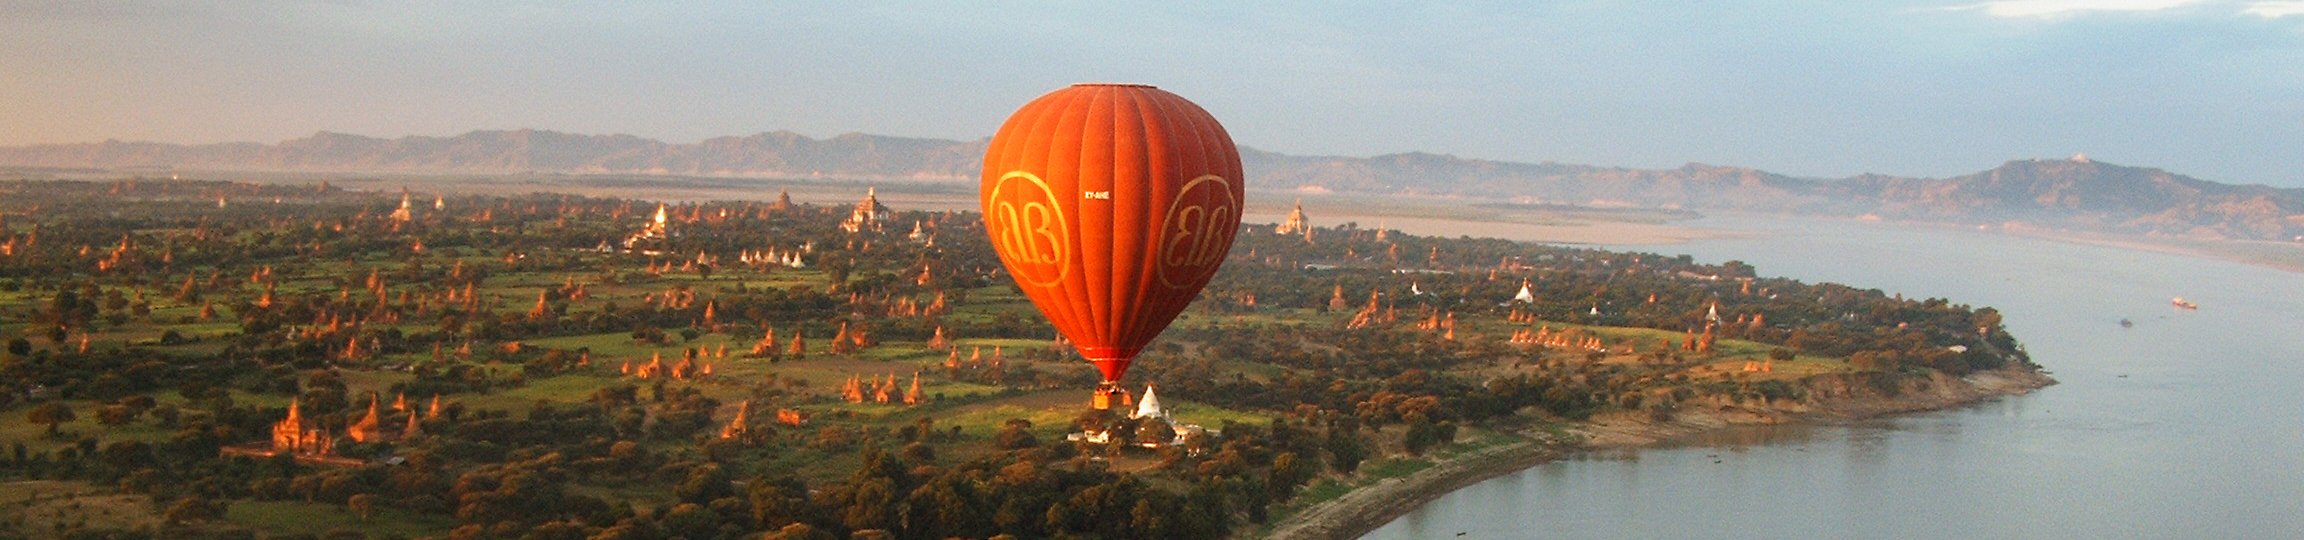 Image of Blissful Bagan